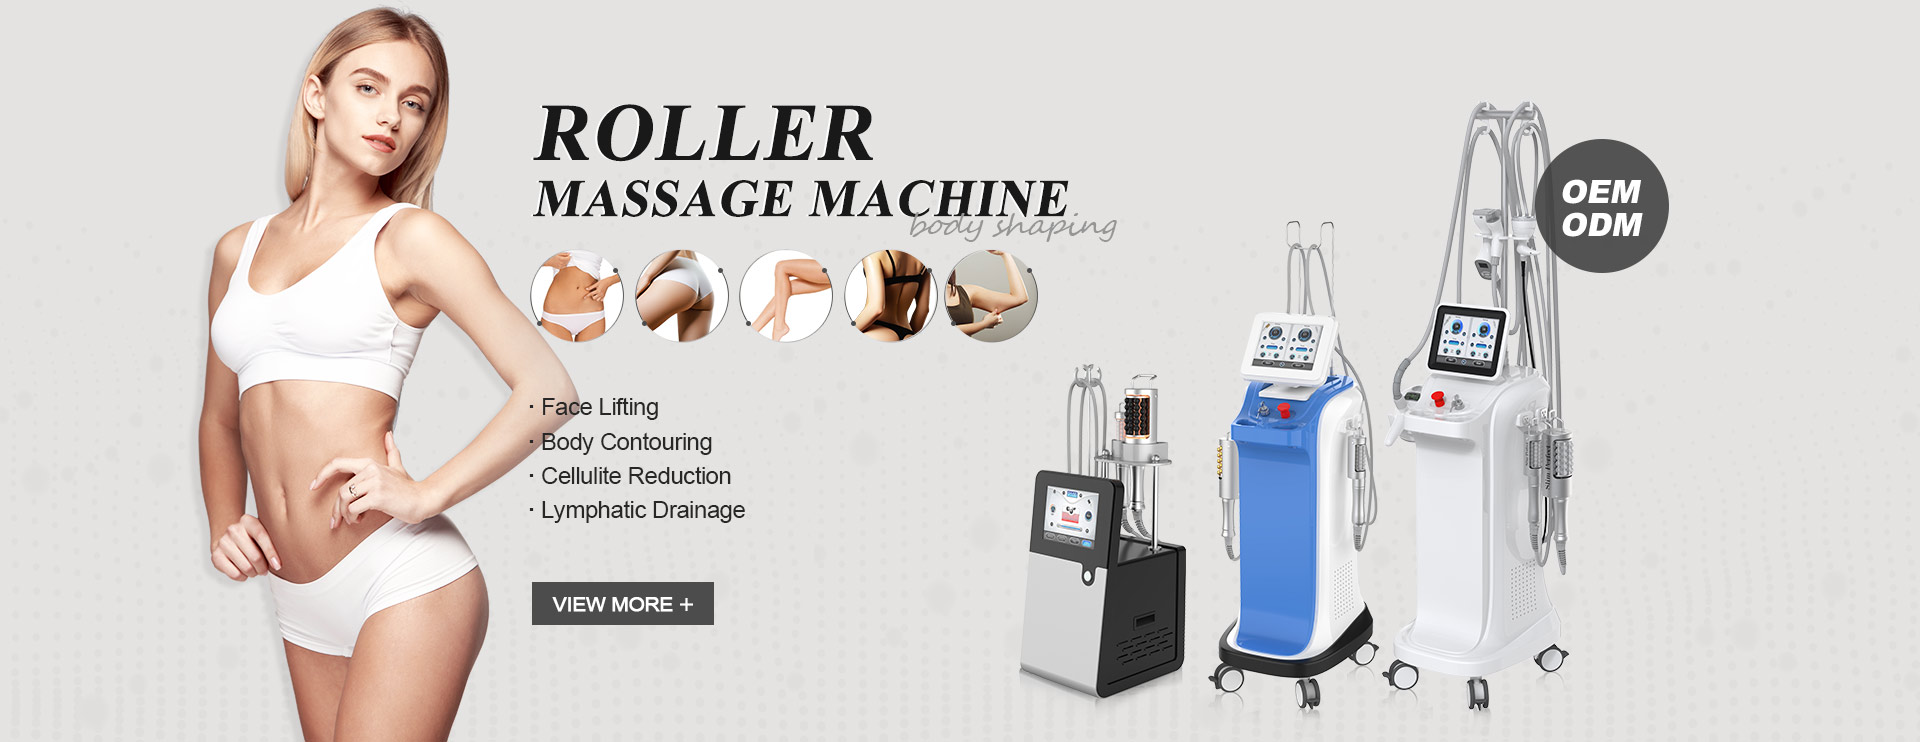 Roller Massage Machine